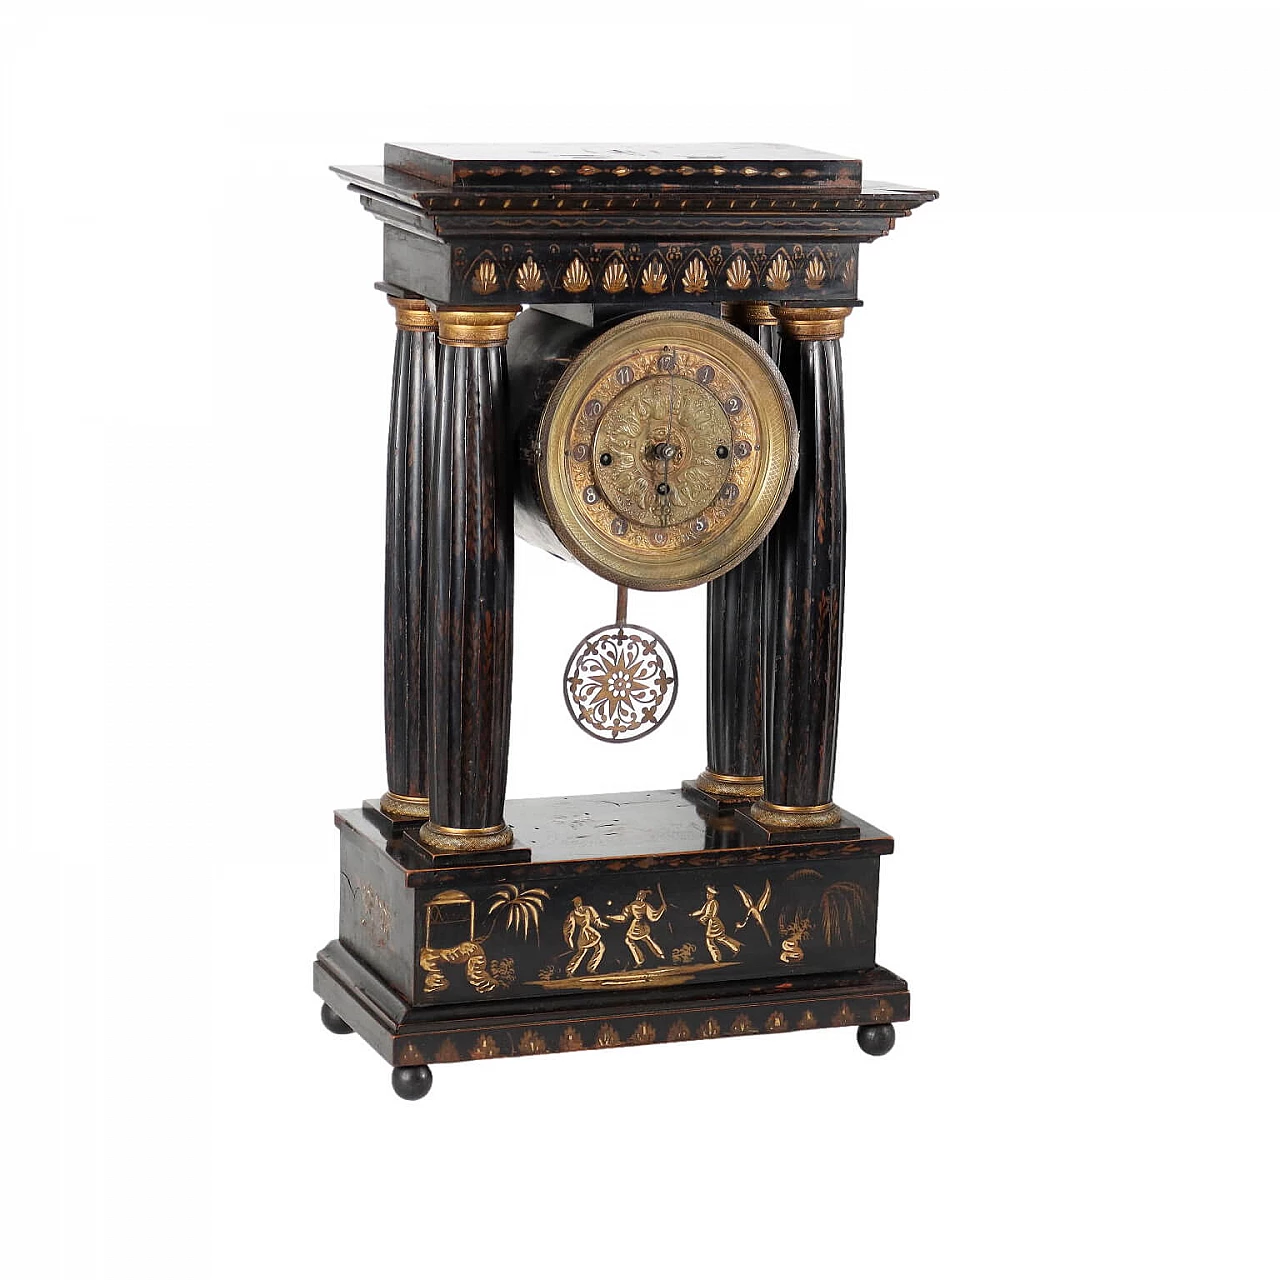 Orologio a tempietto in legno con decori chinoiserie, del '800 1